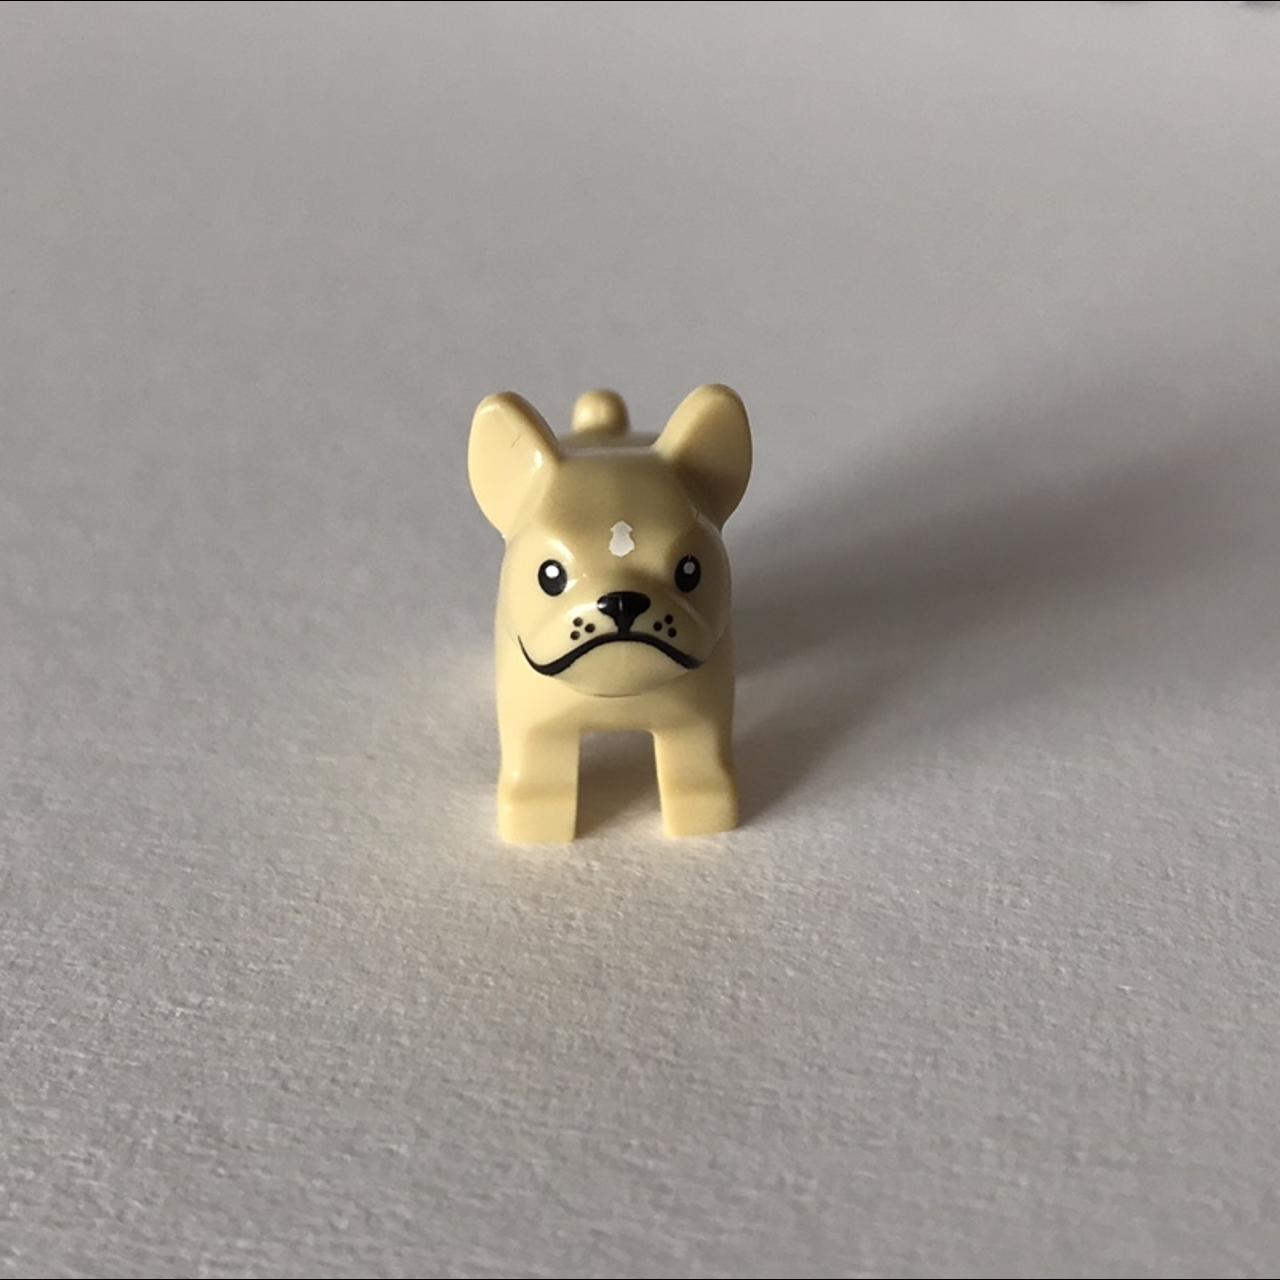 Brand: LEGO Lego golden frenchie / French Bulldog - Depop